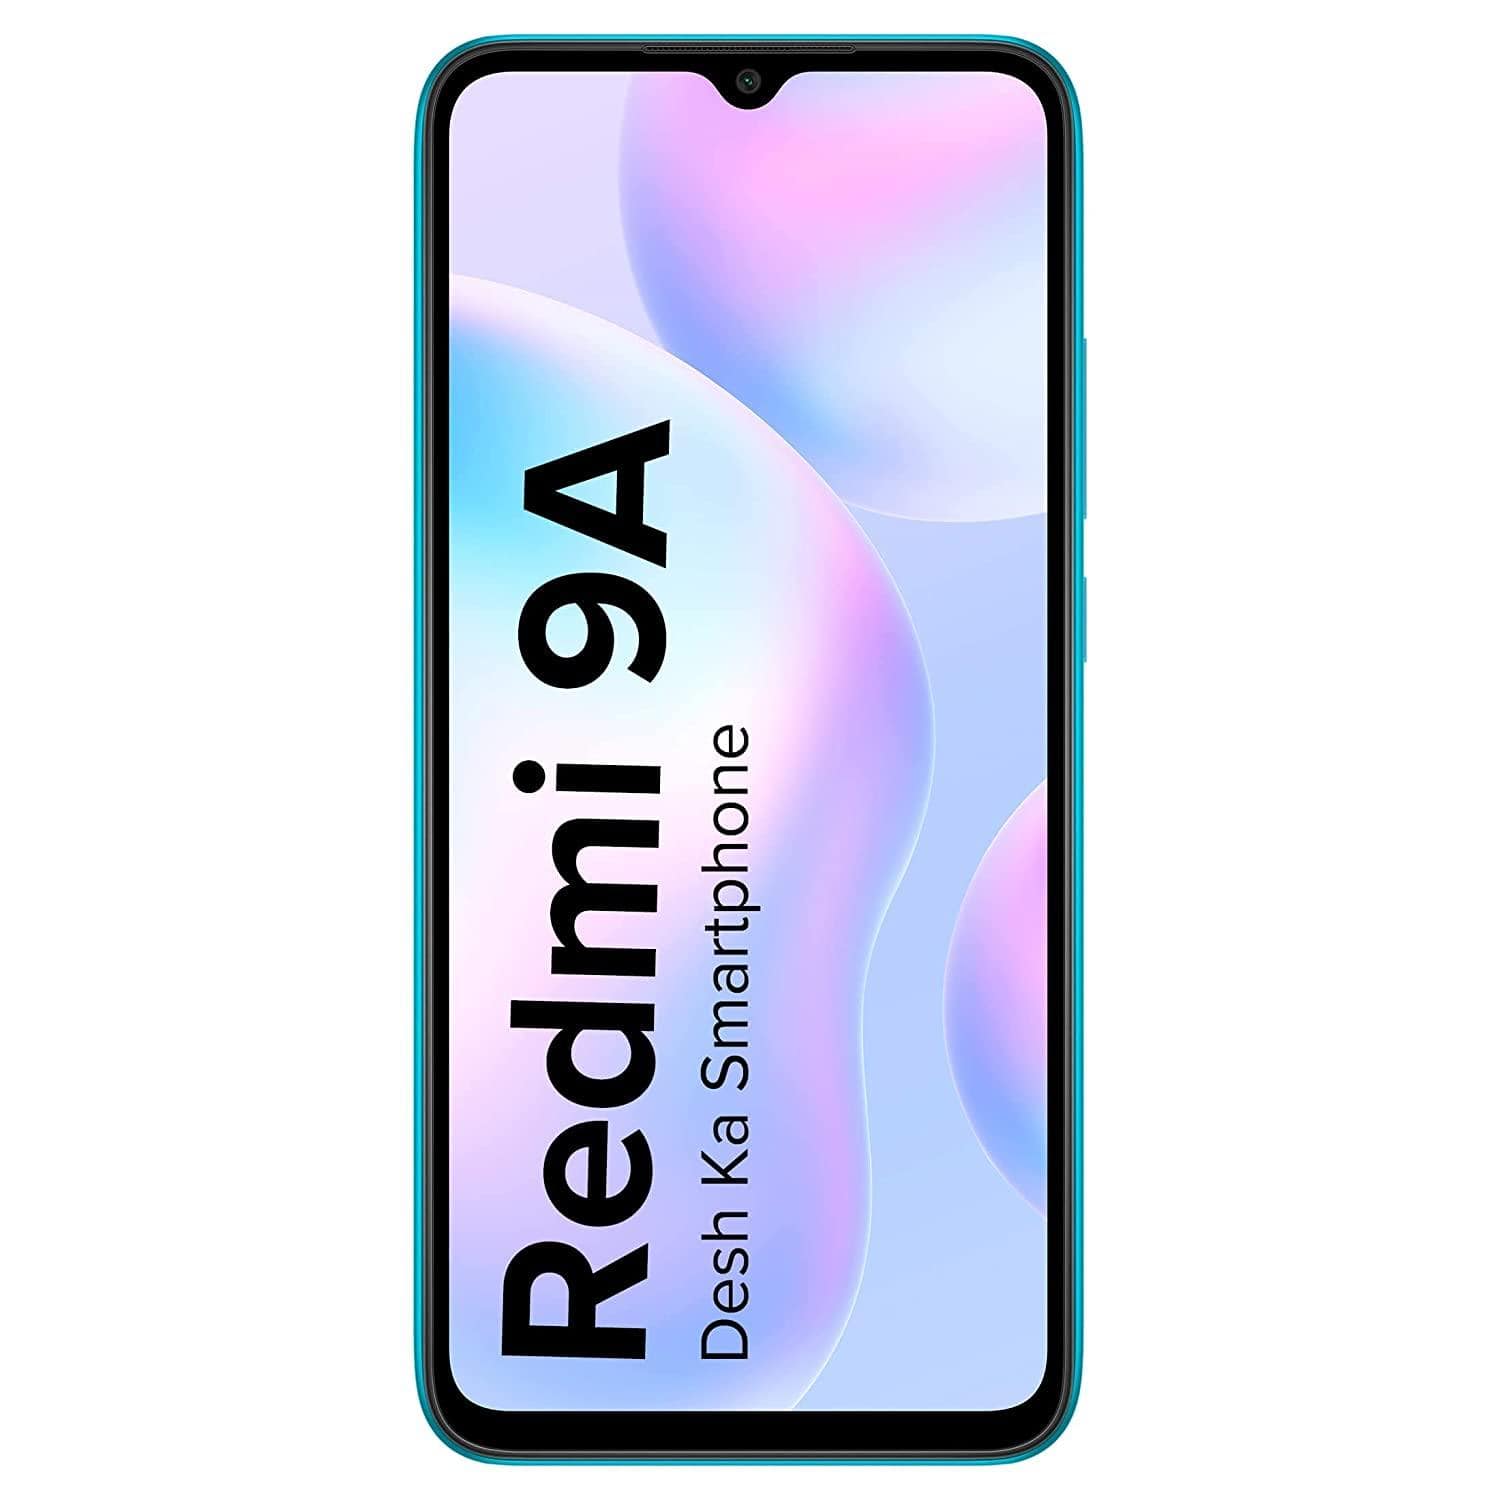 Redmi 9A (2GB Ram, 32GB Storage) | 2GHz Octa-core Helio G25 Processor-dealsplant